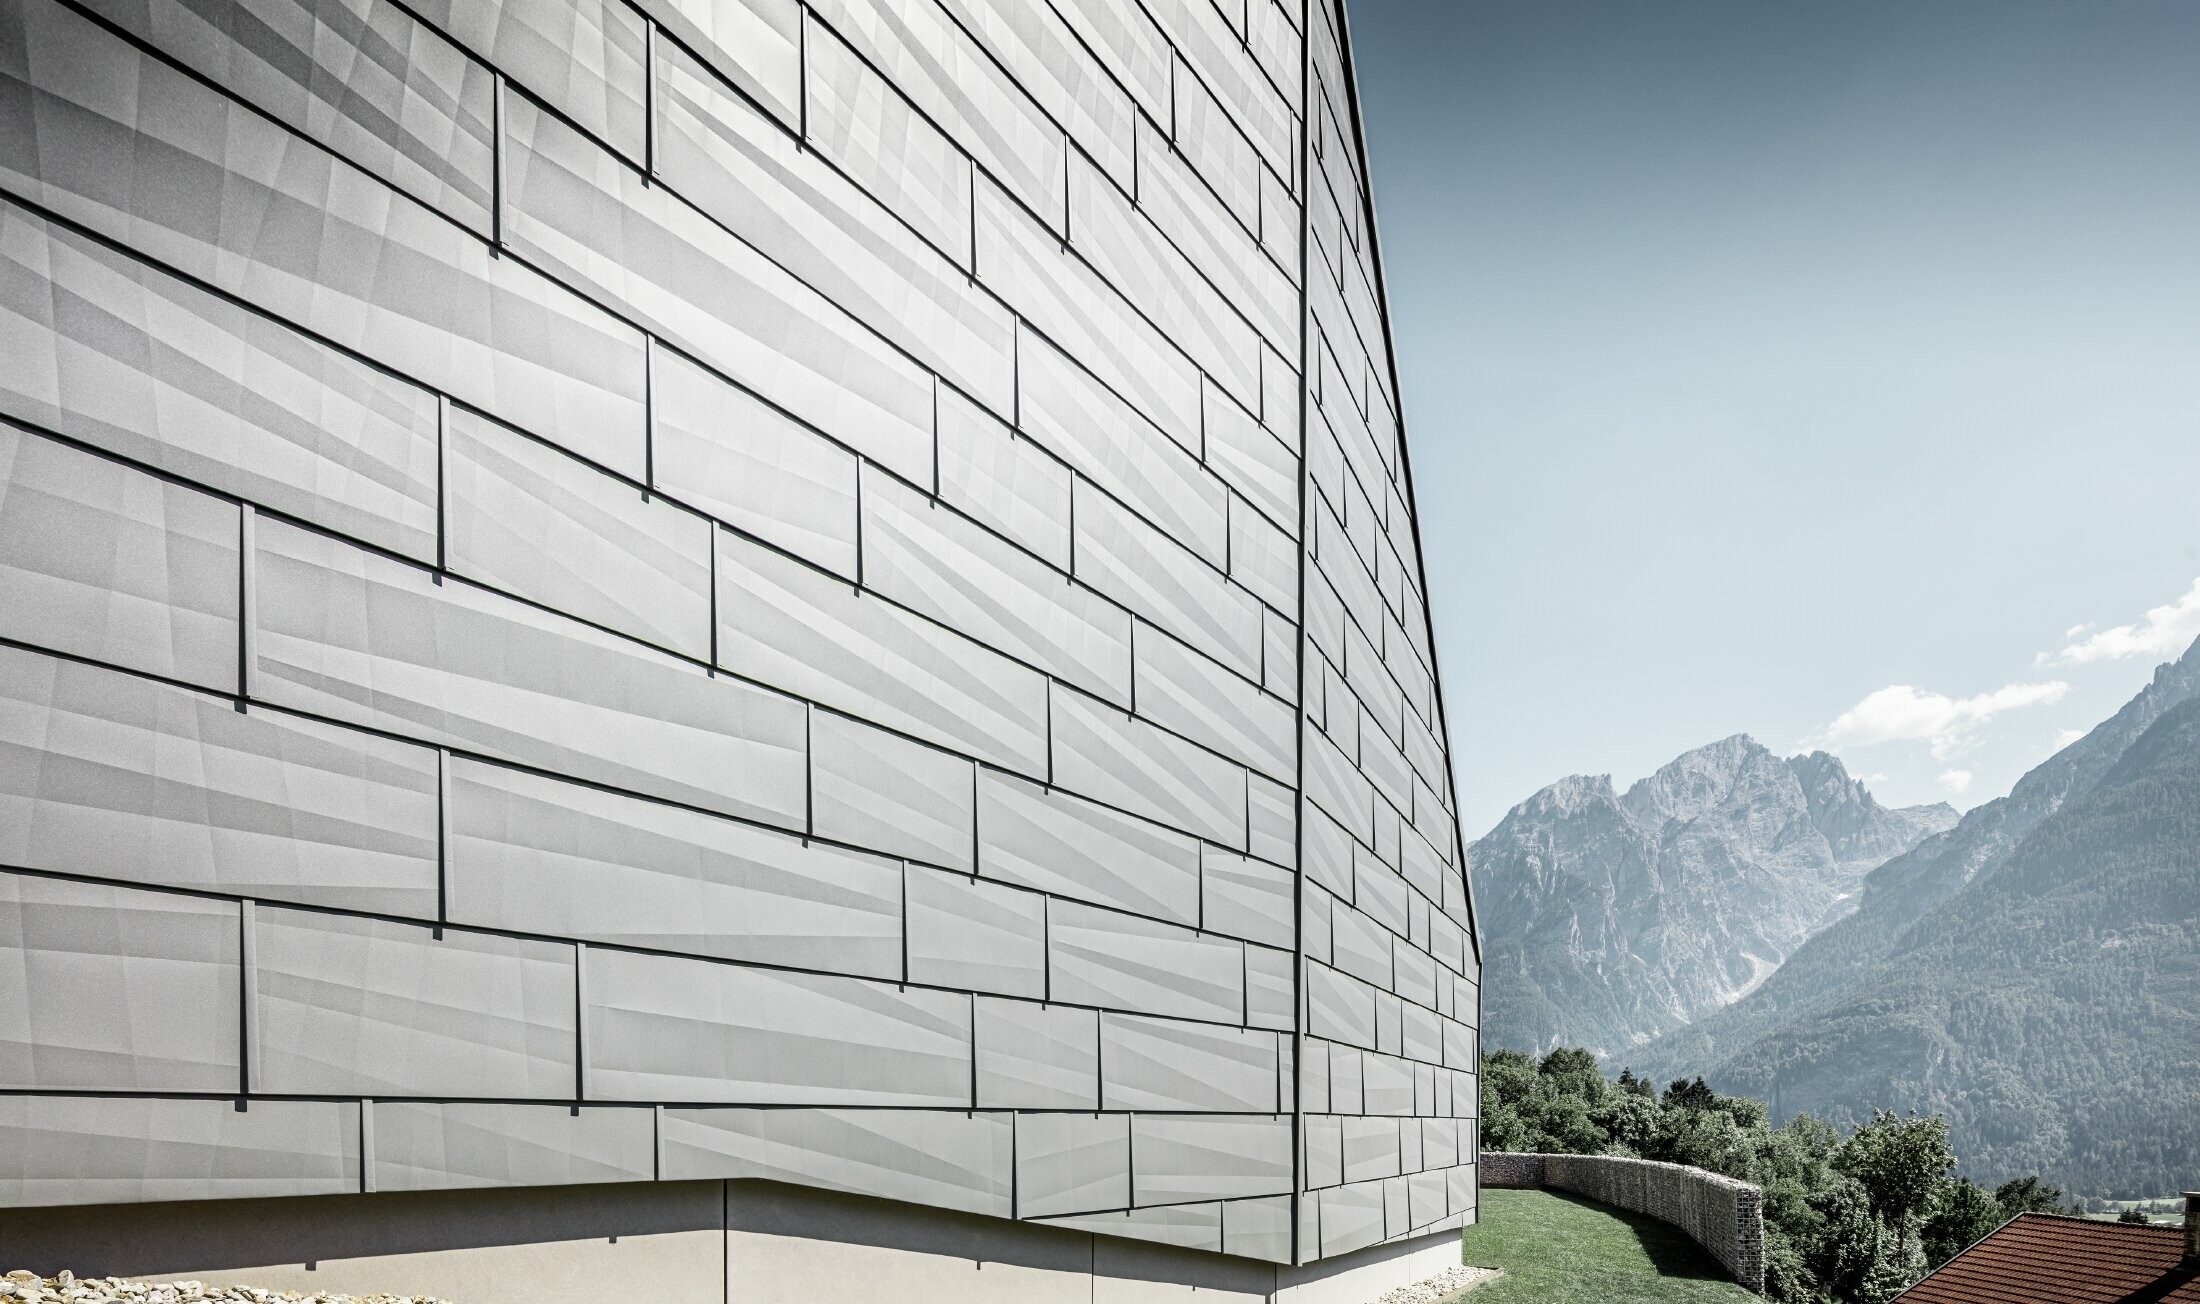 Il lato esposto alle intemperie della casa unifamiliare a Lienz, Austria, è stato rivestito con il pannelli per facciata FX.12 PREFA in P.10 grigio chiaro.